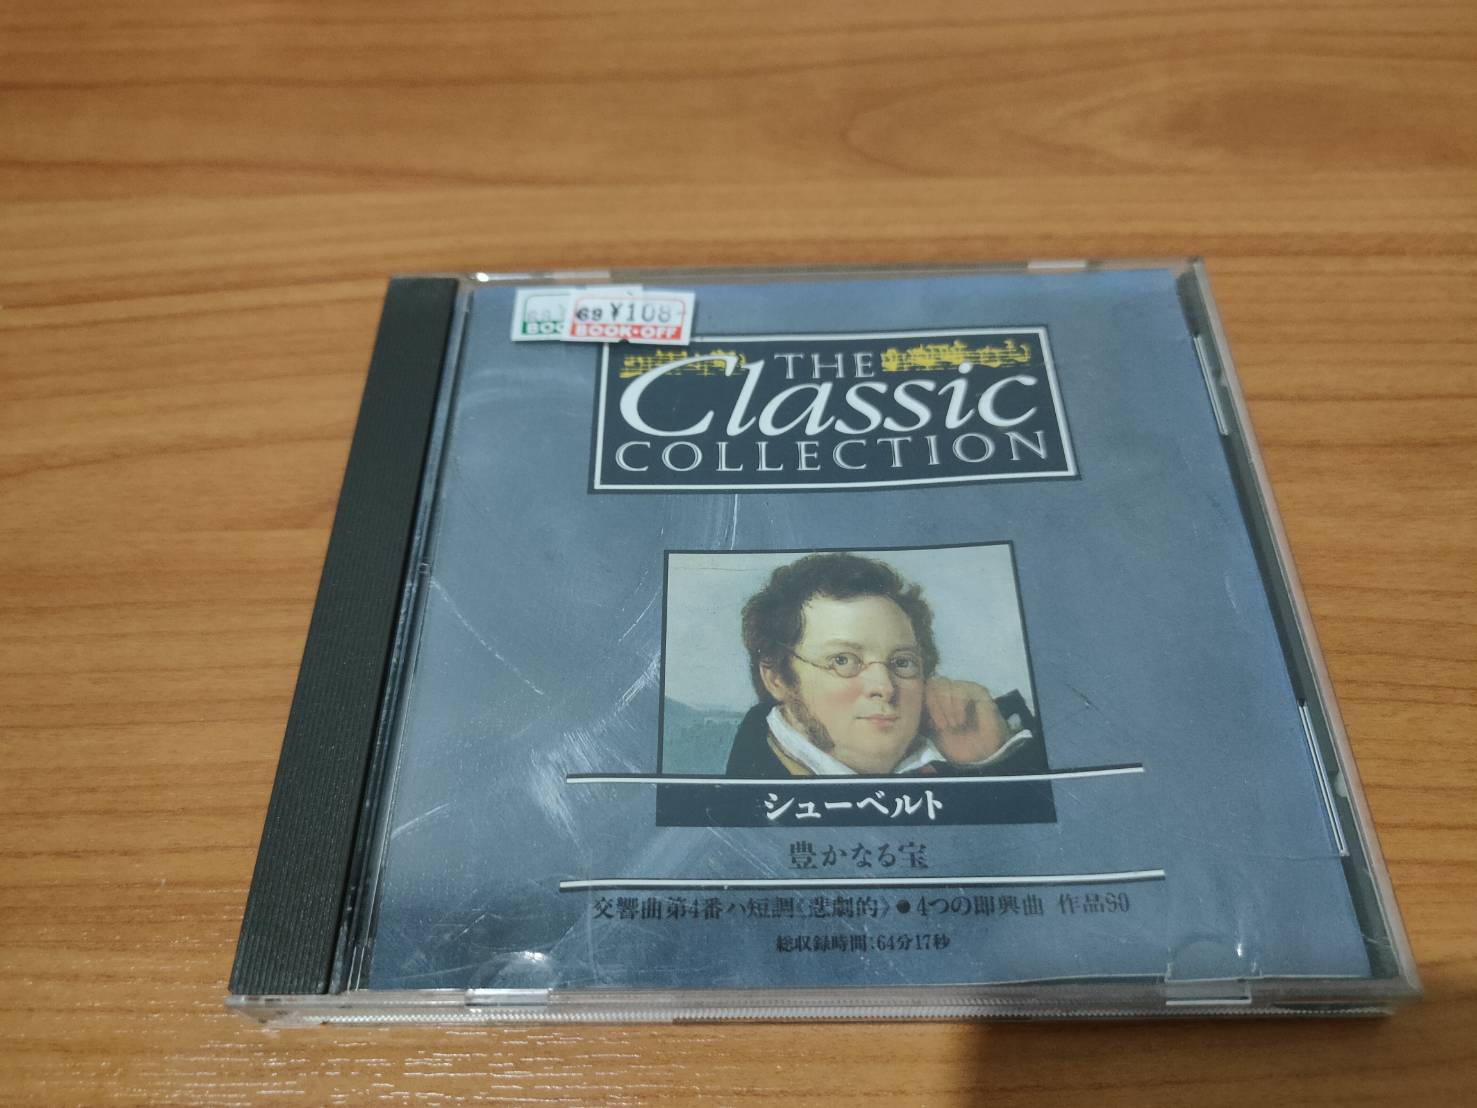 CD MUSIC ซีดีเพลง เพลงสากล The Classis Collection  SCHUBERT  (โปรดดูภาพสินค้าอย่างละเอียดก่อนทำการสั่งซื้อ)